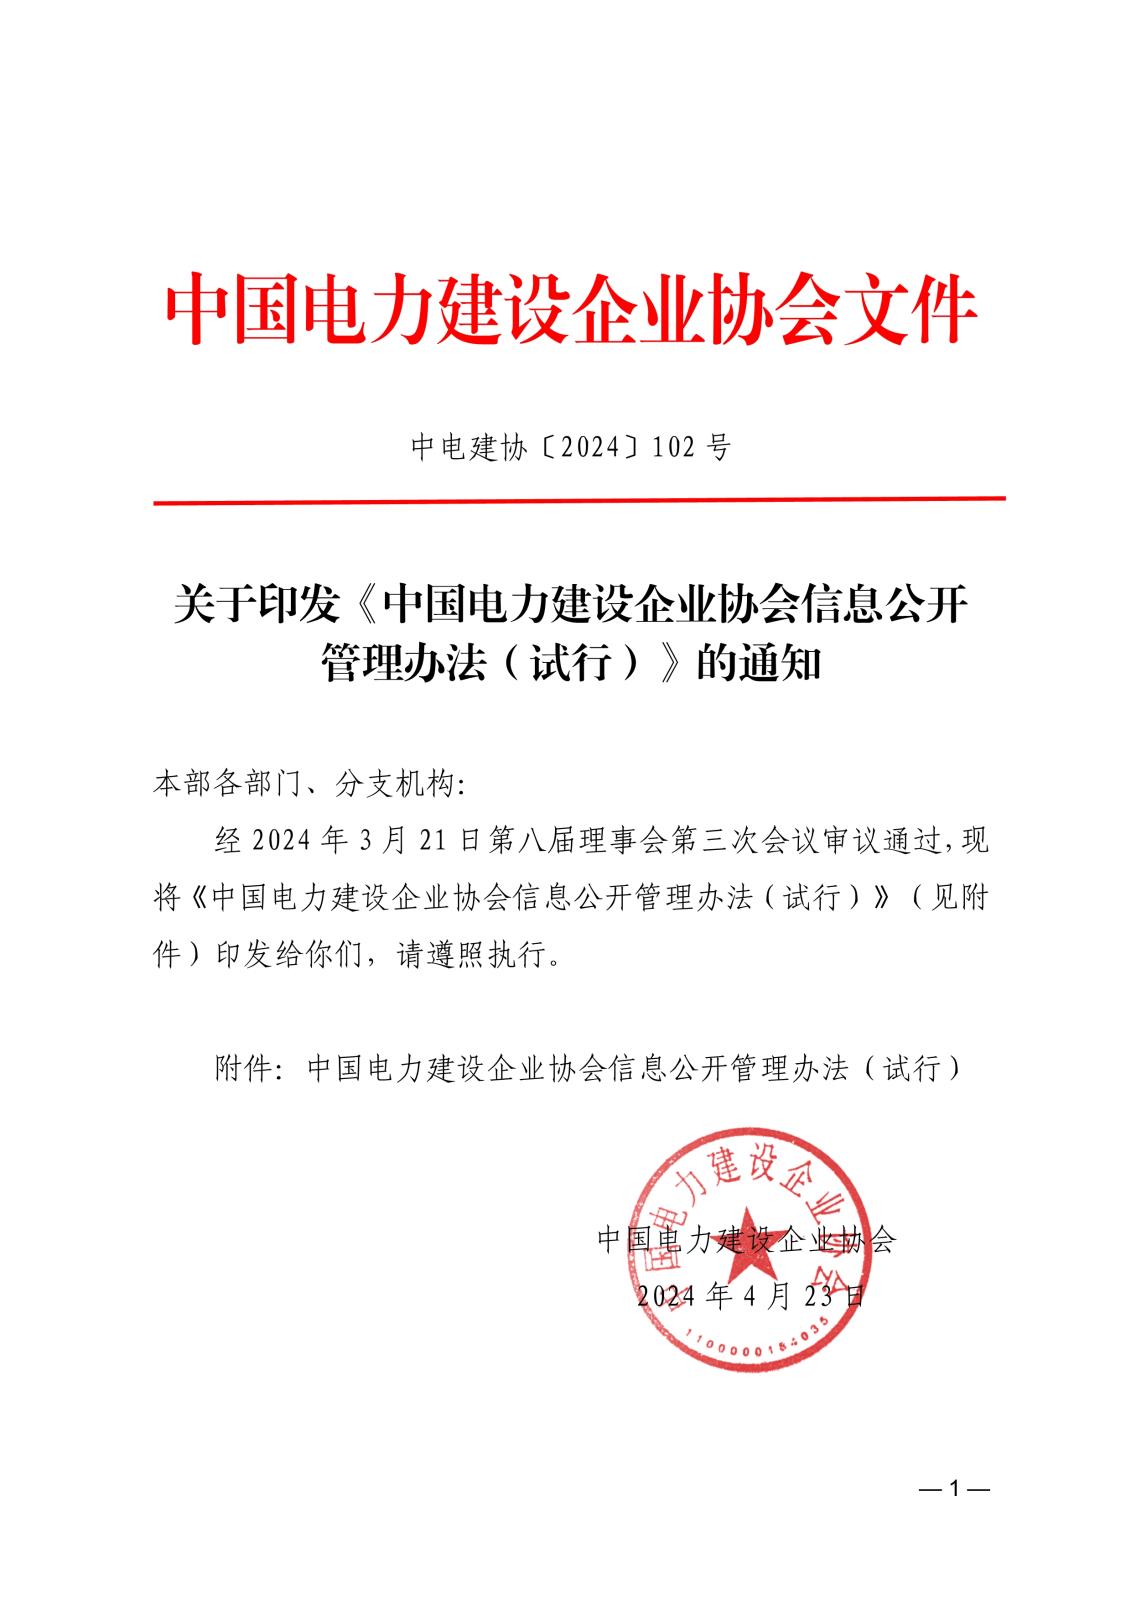 中国电力建设企业协会信息公开管理办法（试行）_1.jpg